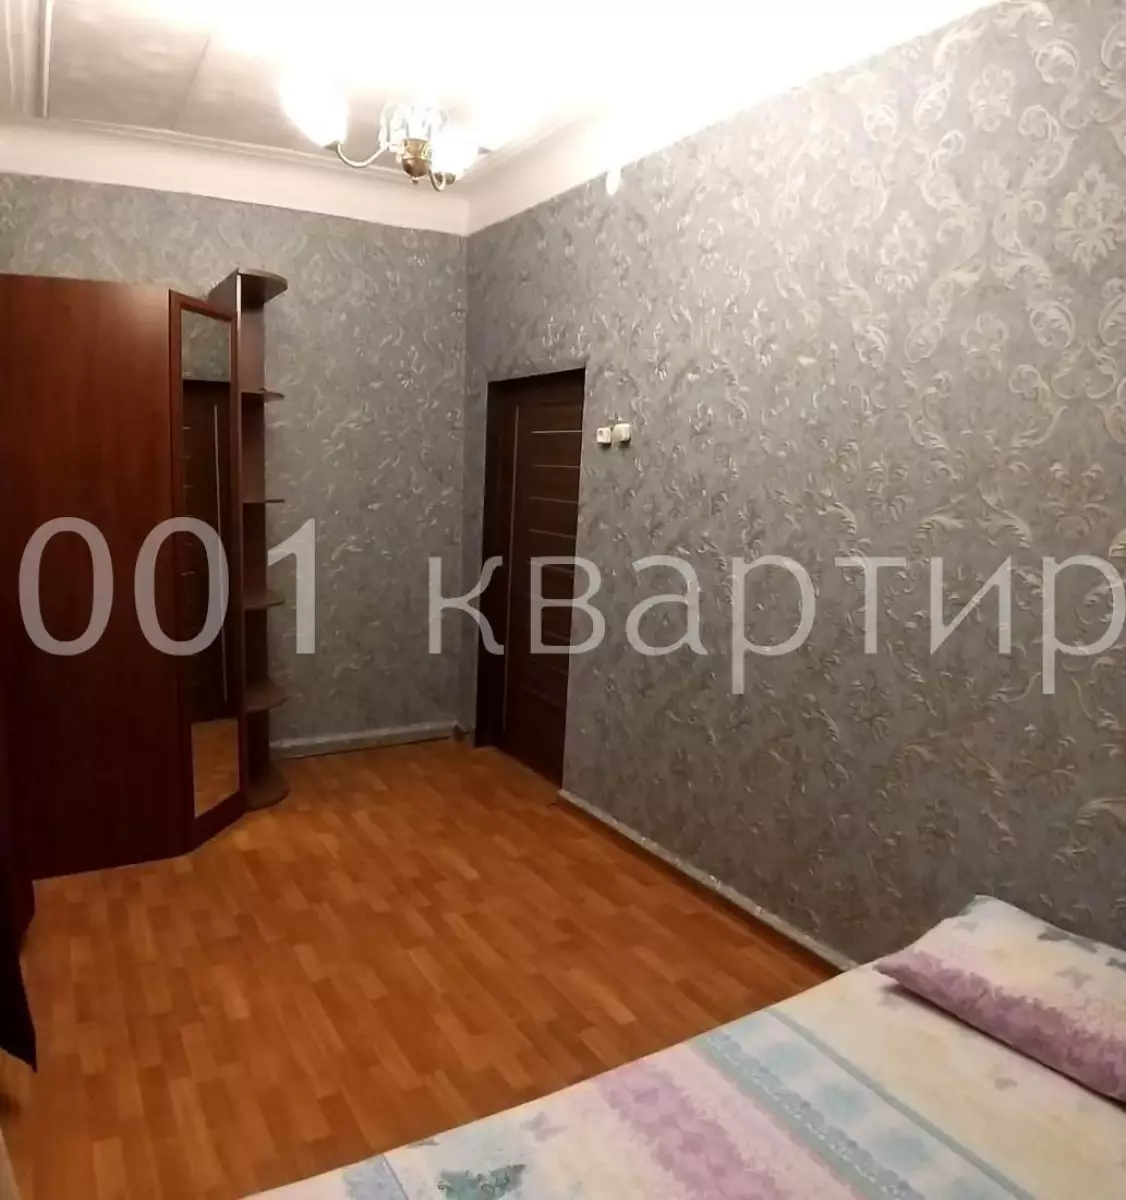 Вариант #132872 для аренды посуточно в Саратове Зои Космодемьянской, д.16 на 6 гостей - фото 4